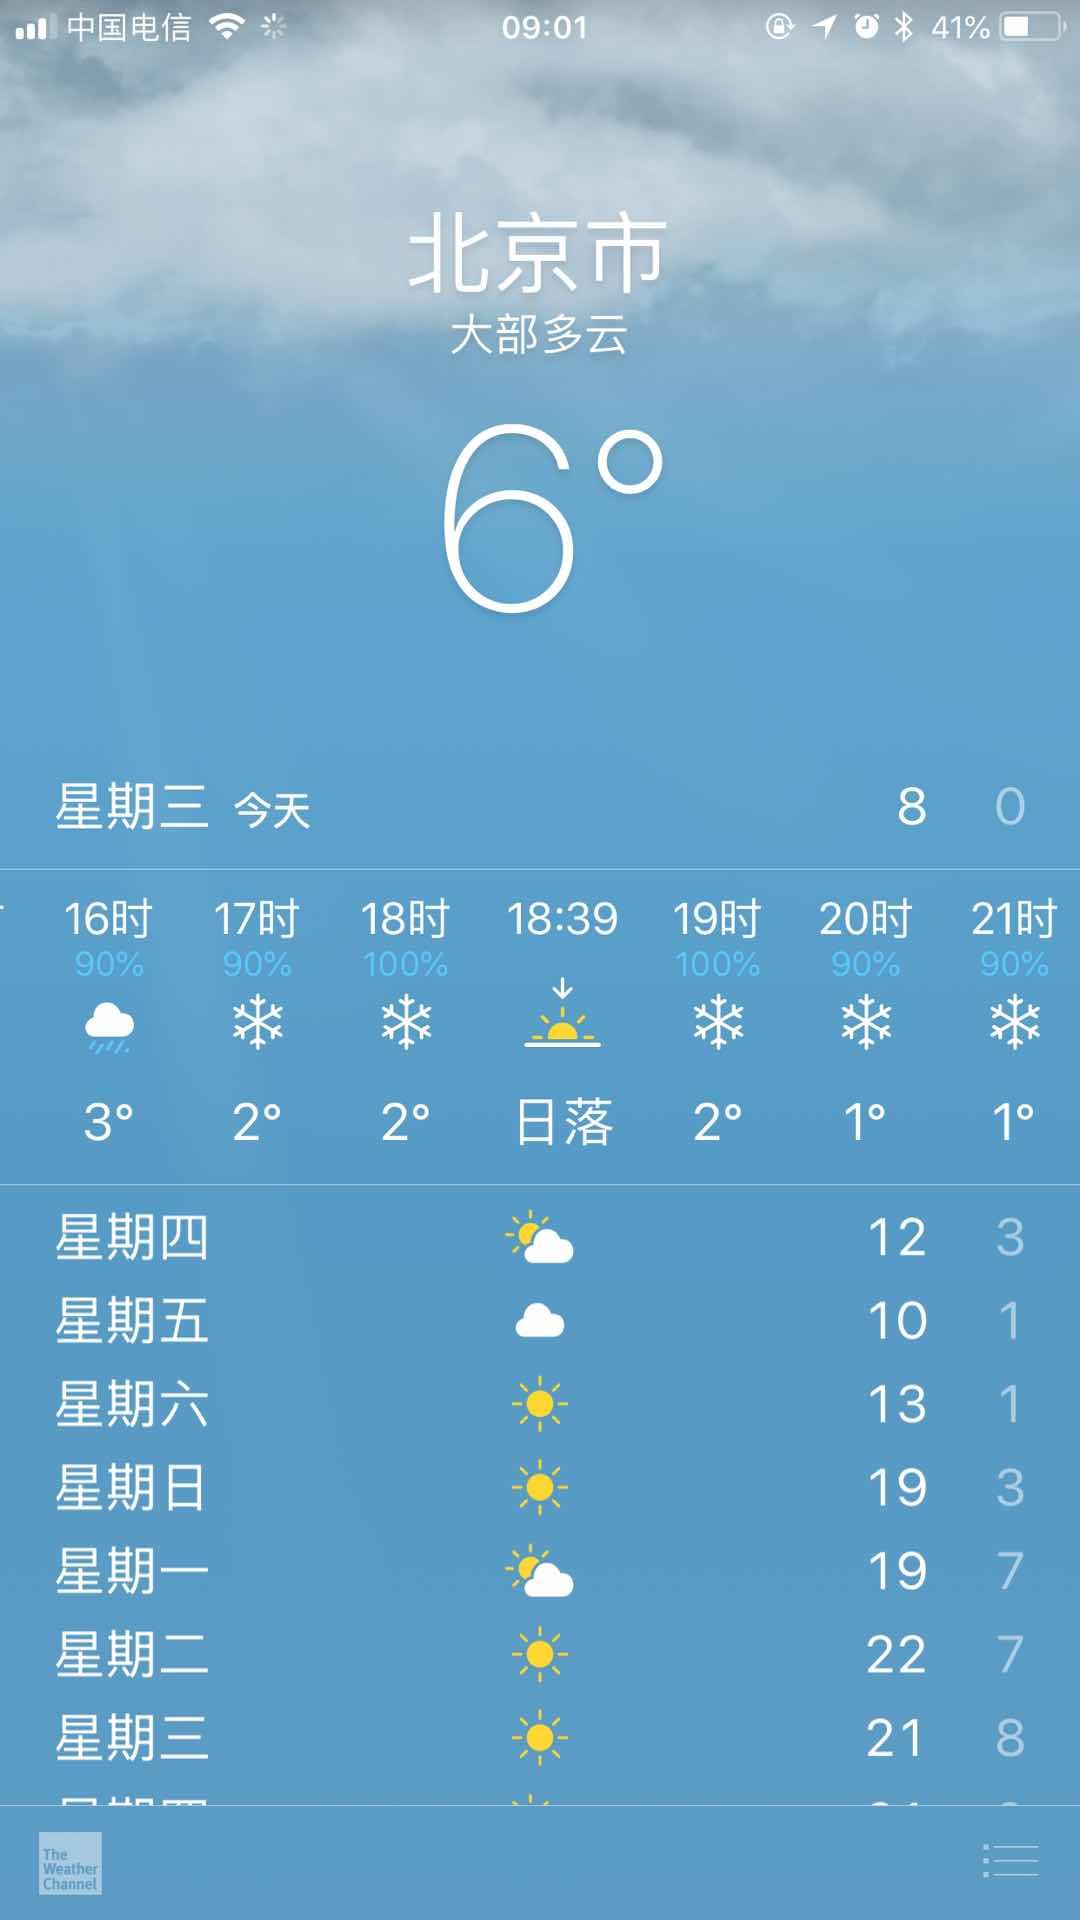 北京 突然就大幅度降温了